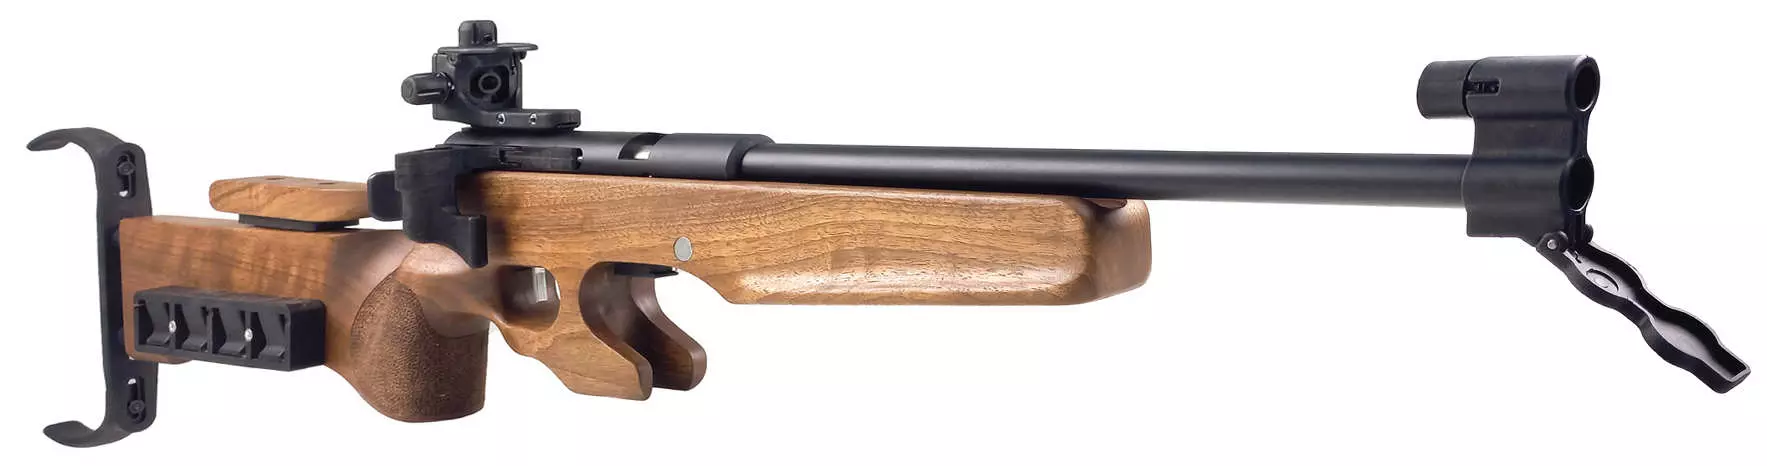 Electronic biathlon gun (carbine) for target training 